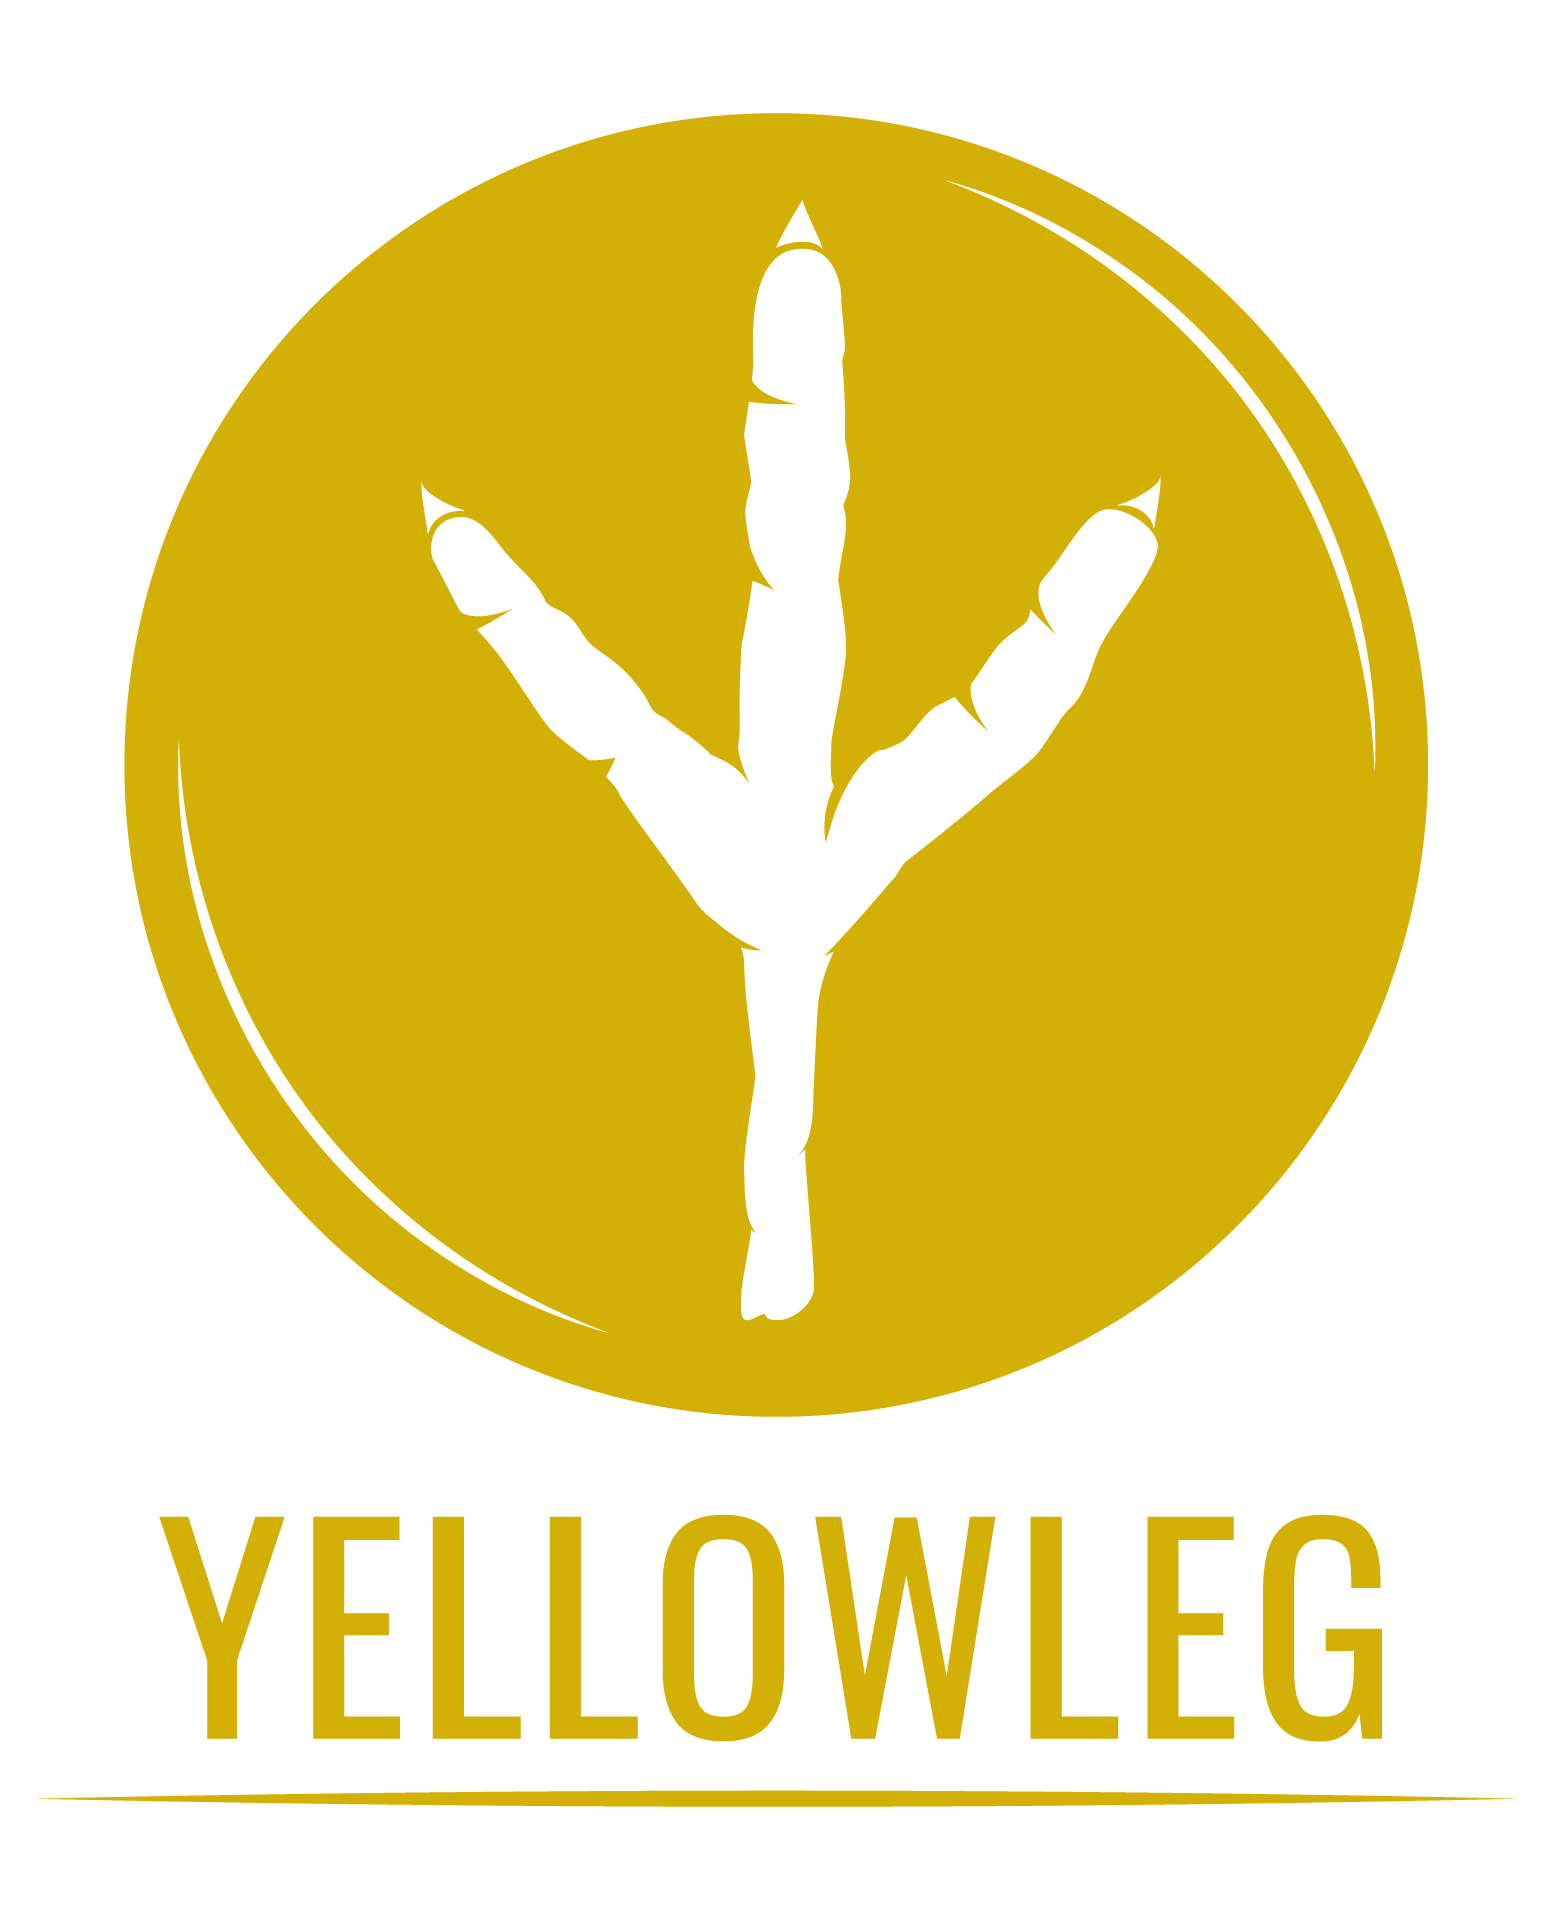 Yellowleg